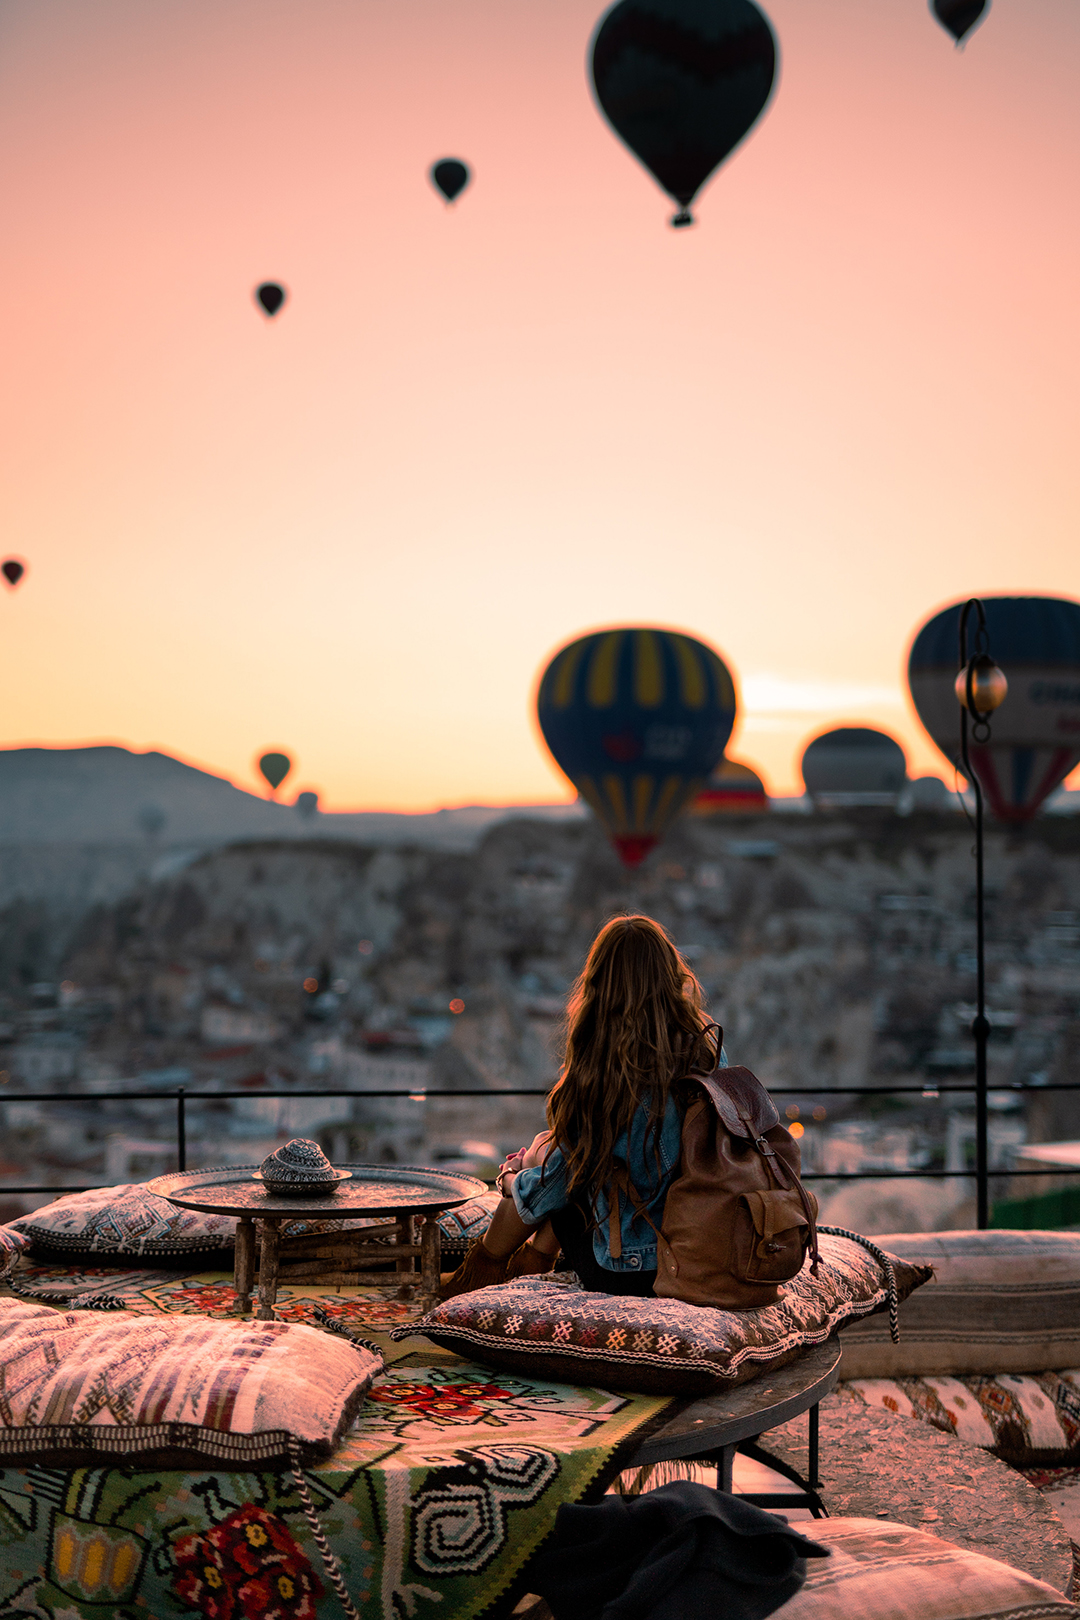 03_Potovanje_v_Turcijo_-_Travel_to_Turkey_-_Photo_by_Taryn_Elliott_from_Pexels.jpg